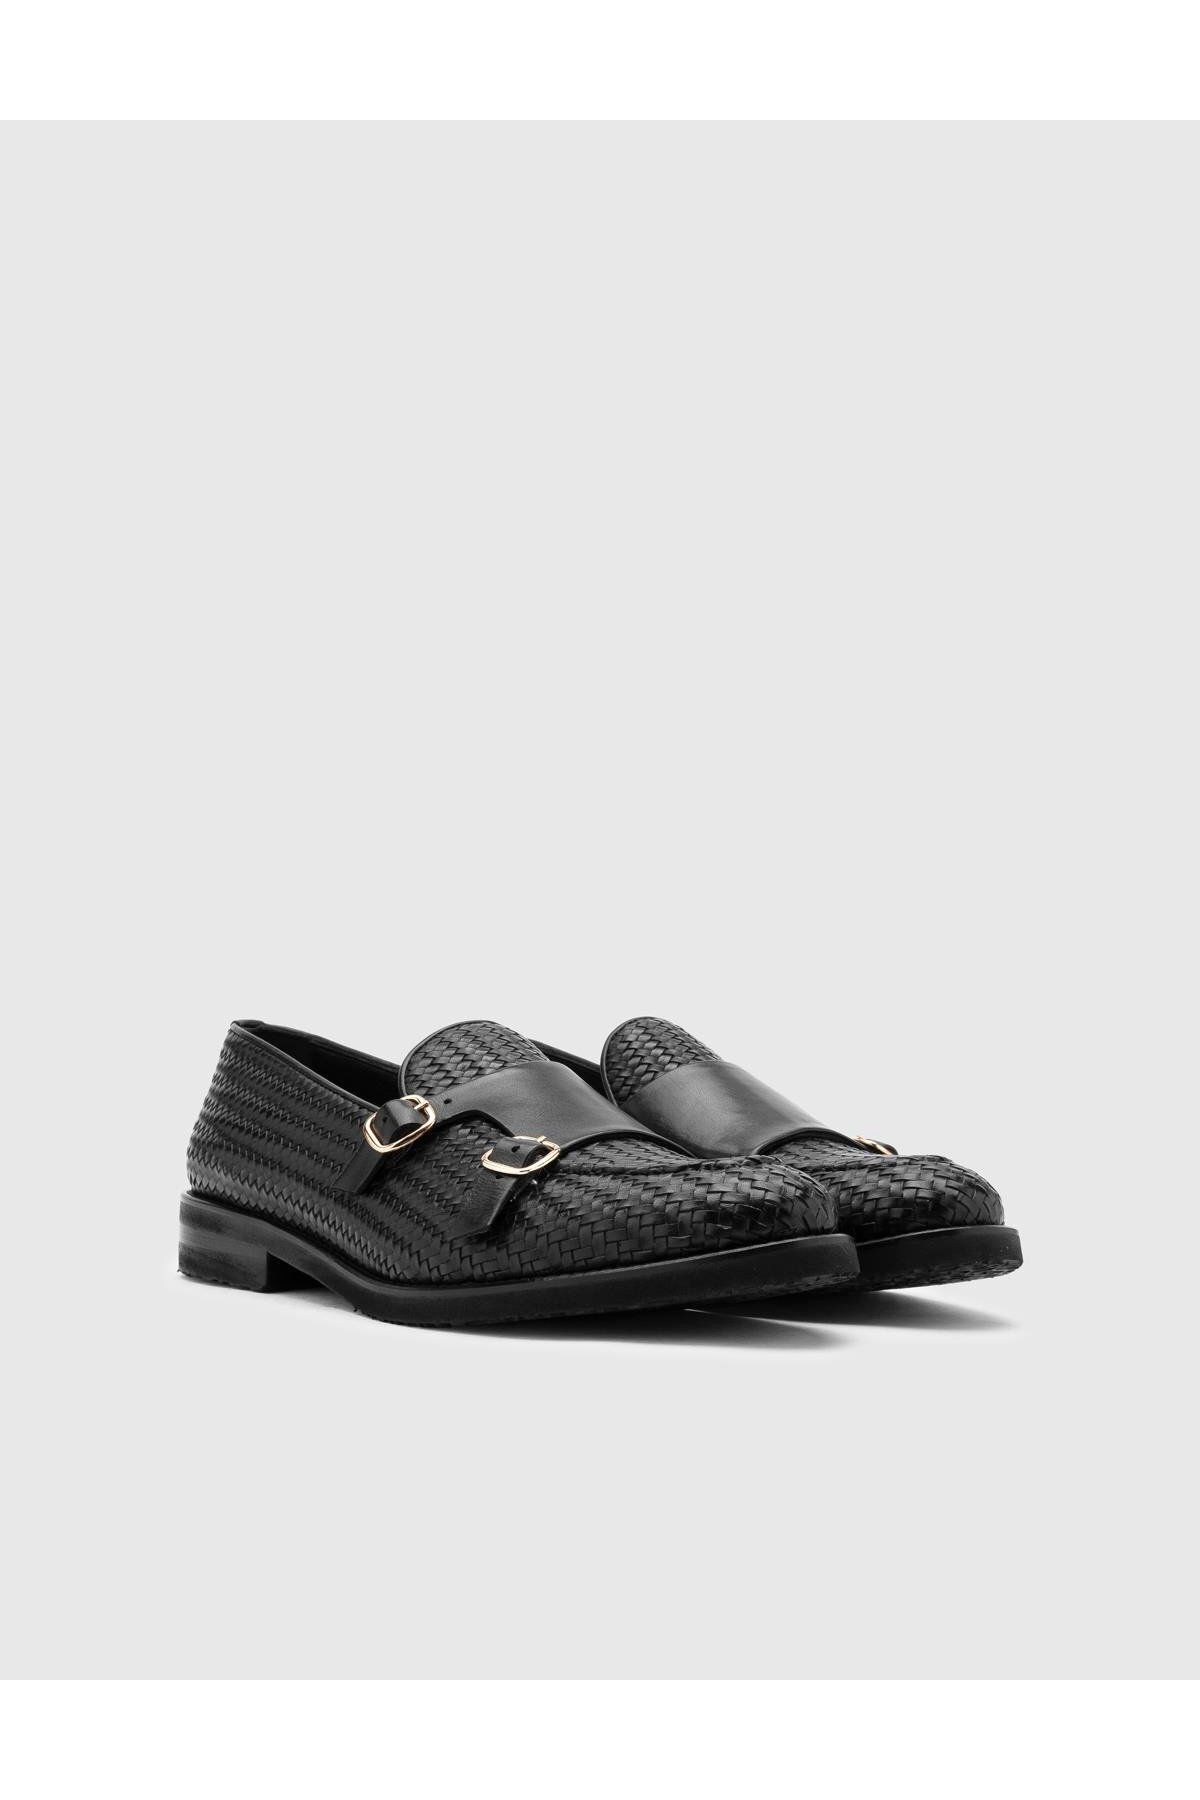 İlvi Alvaro Hakiki Örgü Antik Deri Erkek Siyah Loafer Ayakkabı